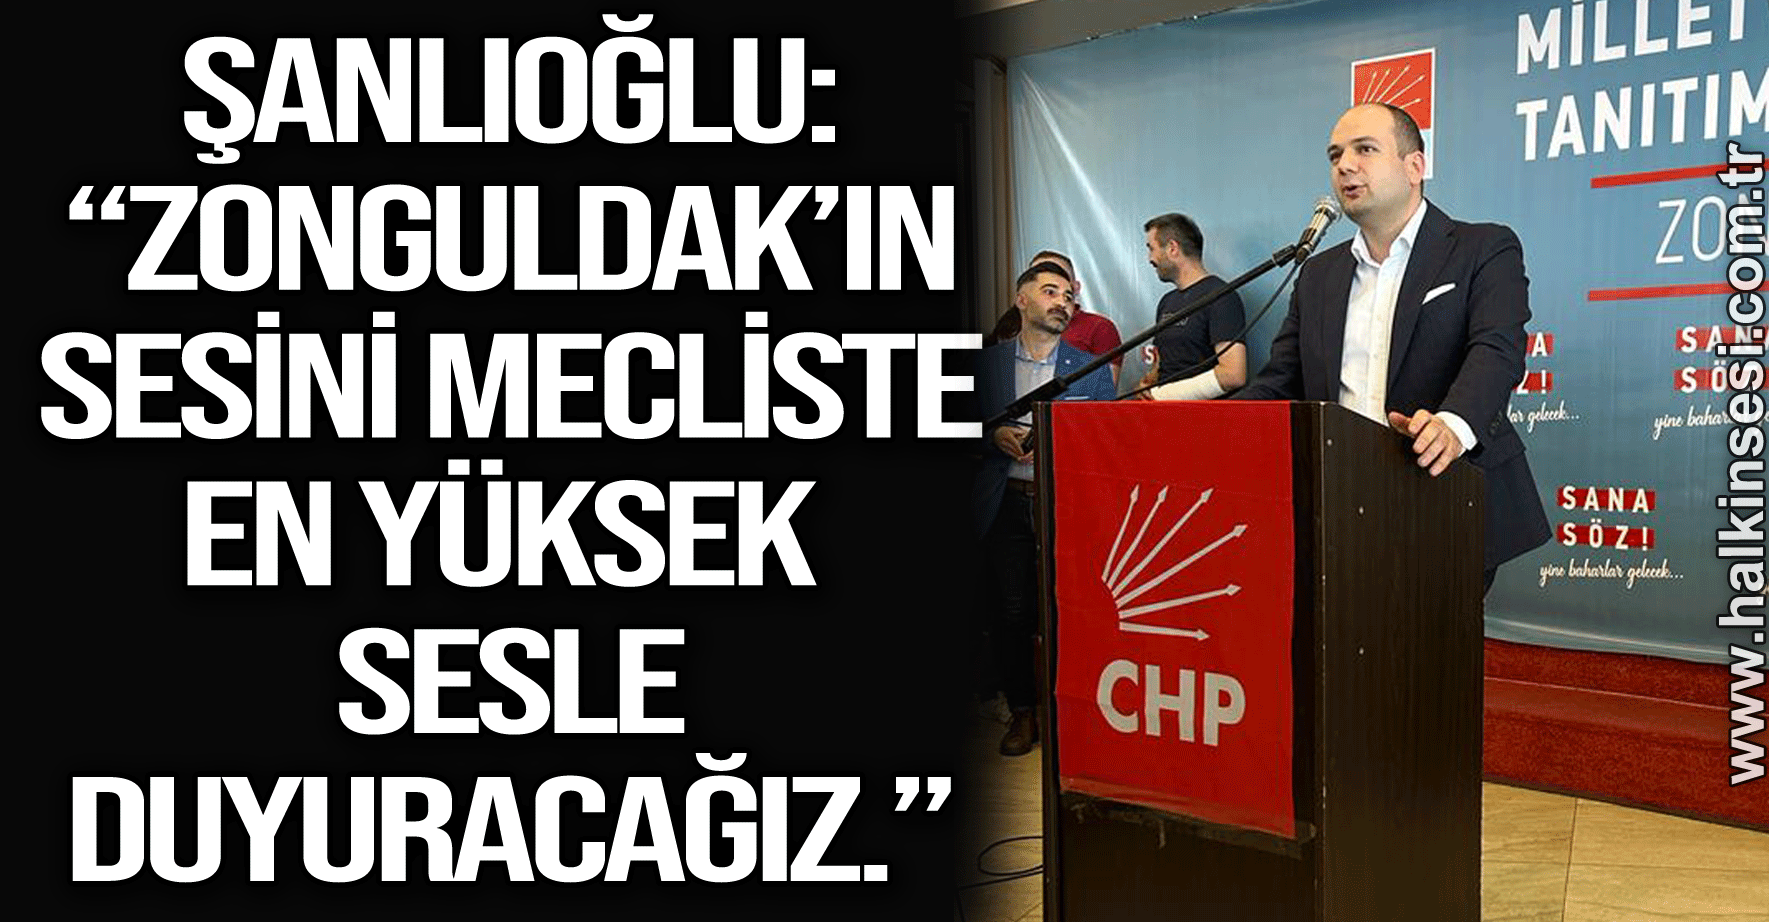 Doğa Şanlıoğlu: “Çalışan Zonguldak’ın sesini mecliste en yüksek sesle duyuracağız.”